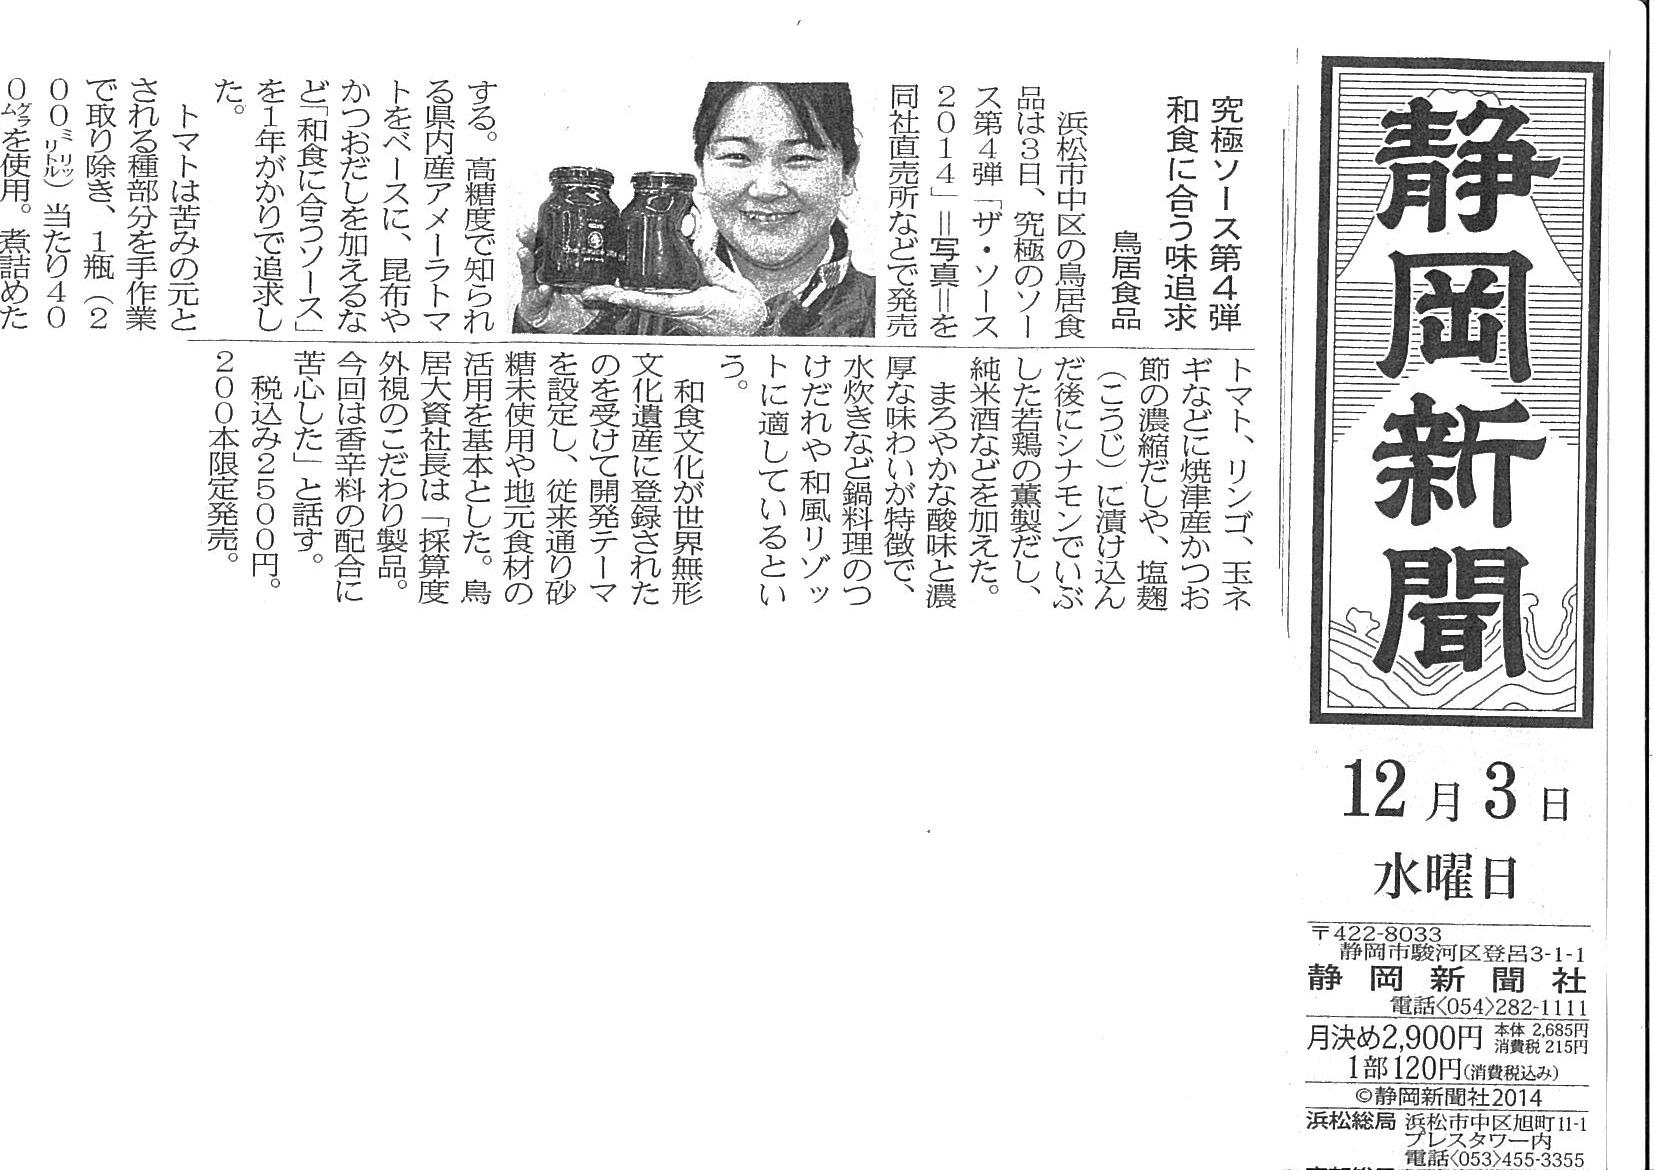 http://www.torii-sauce.jp/media/img-310121736-0001.jpg